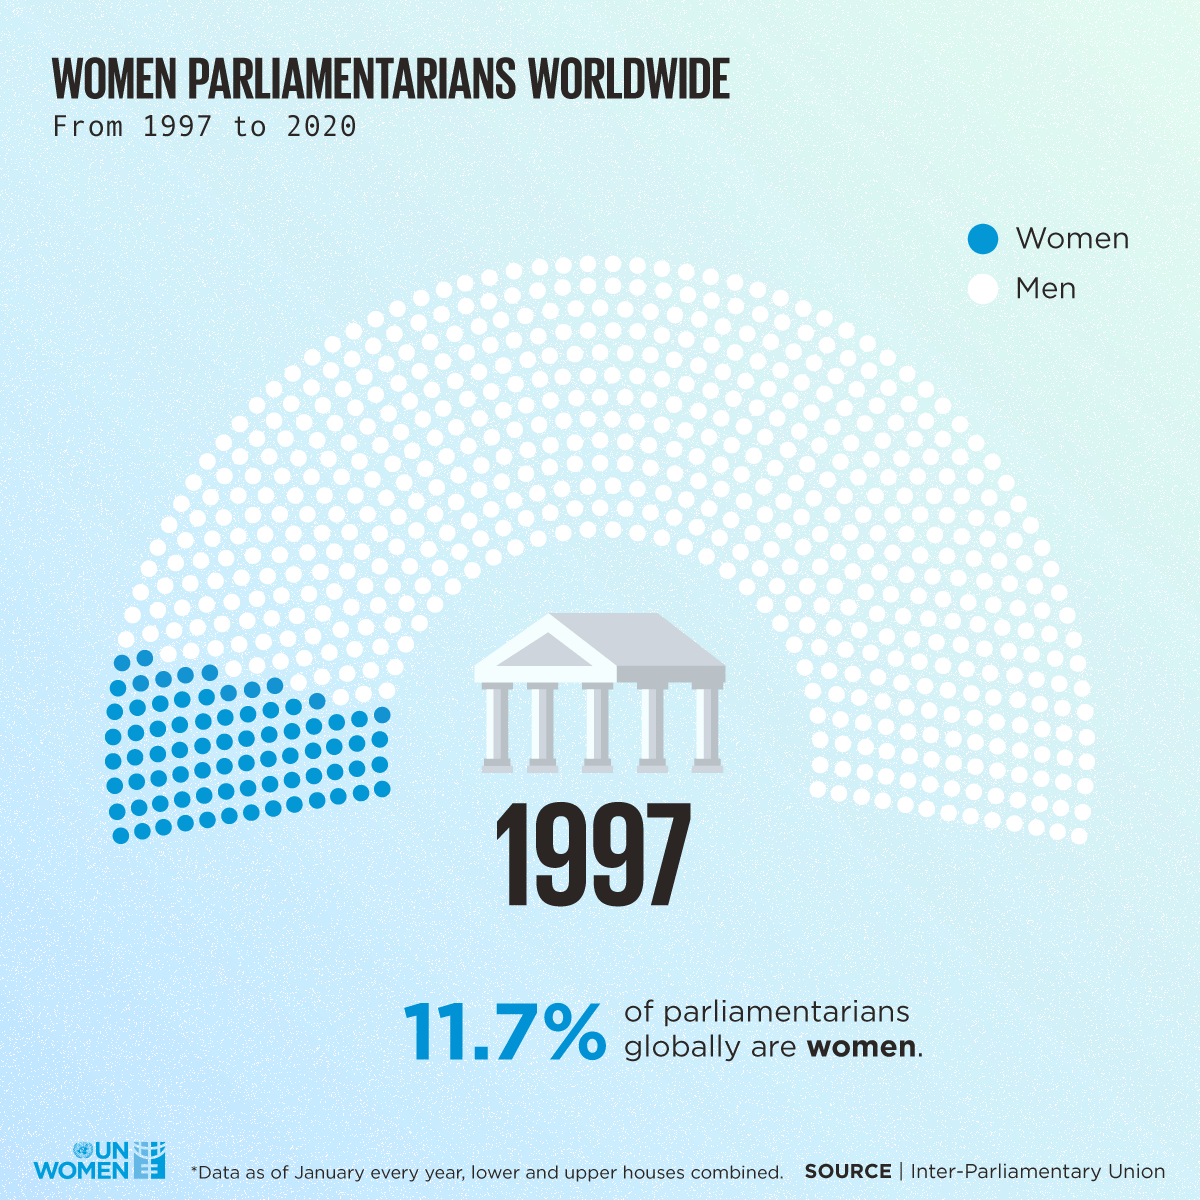 Gif bildet die Entwicklung des Frauenanteils in Parlamenten weltweit von 1997-2020 ab. Ihr Anteil liegt auch 2020 immer noch weit unter 50 Prozent.